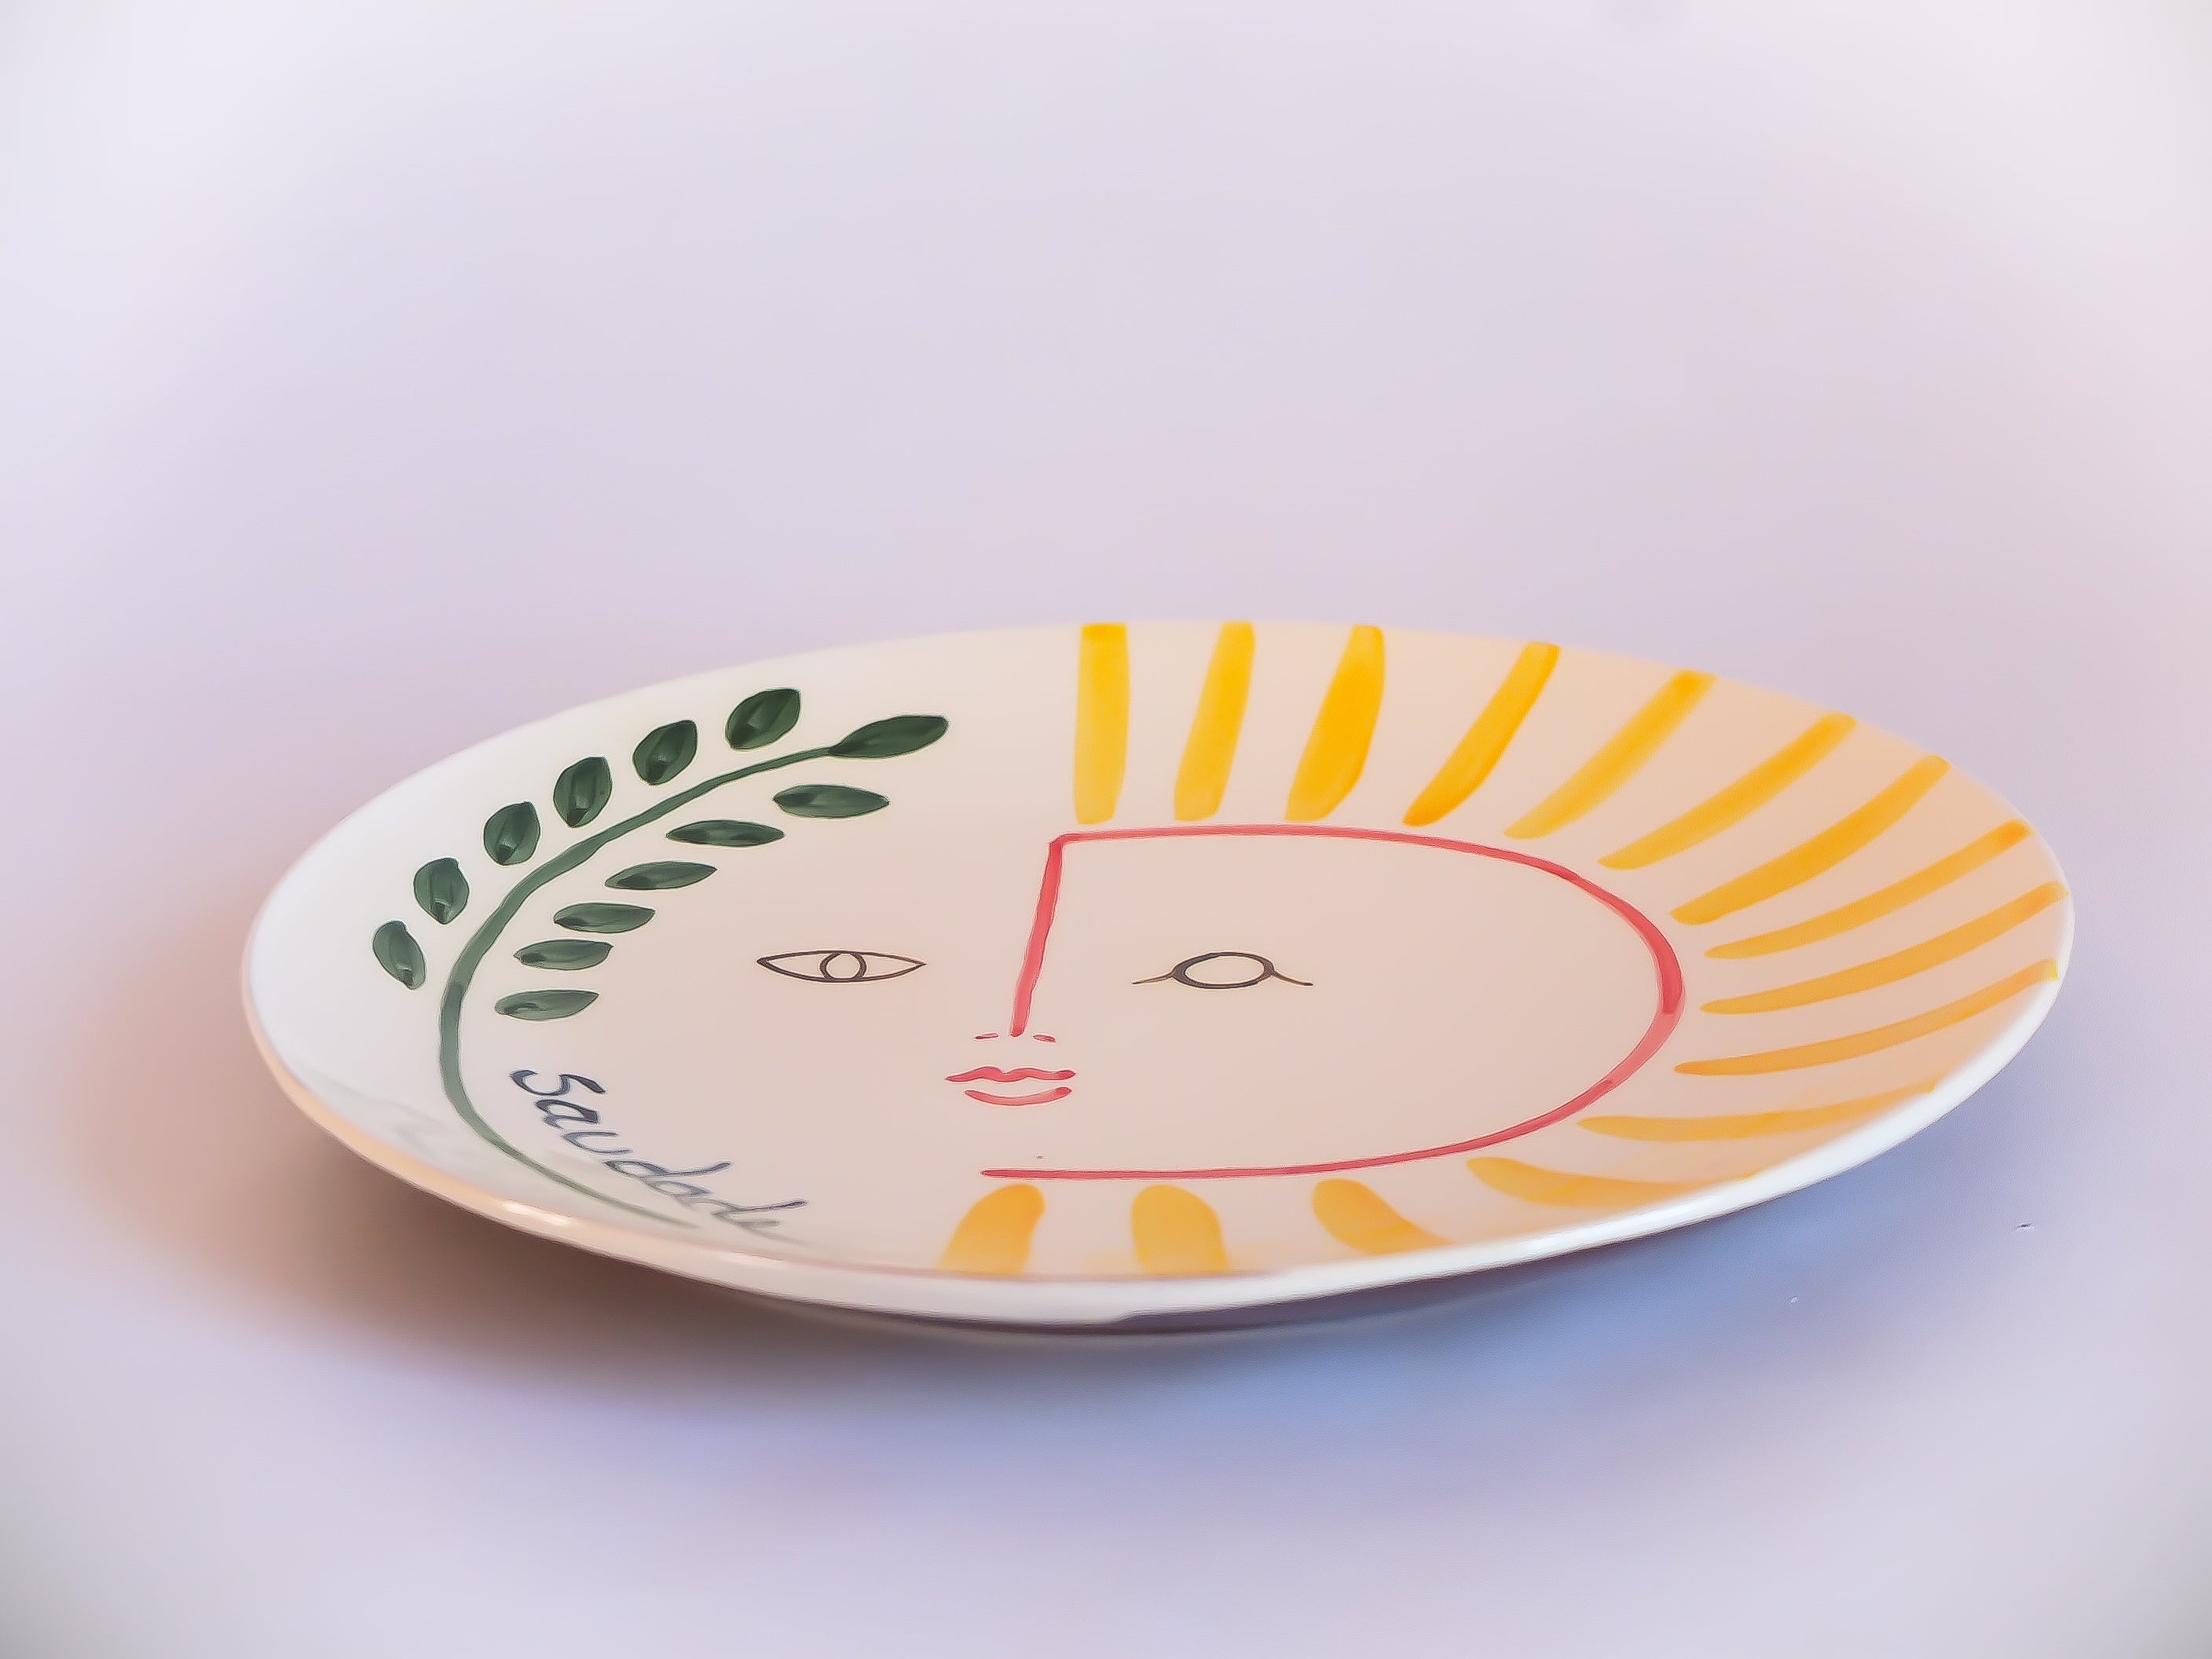 Assiette plate en céramique fabriquée et peinte à la main dans la région portugaise de l'Alentejo. Illustration soleil